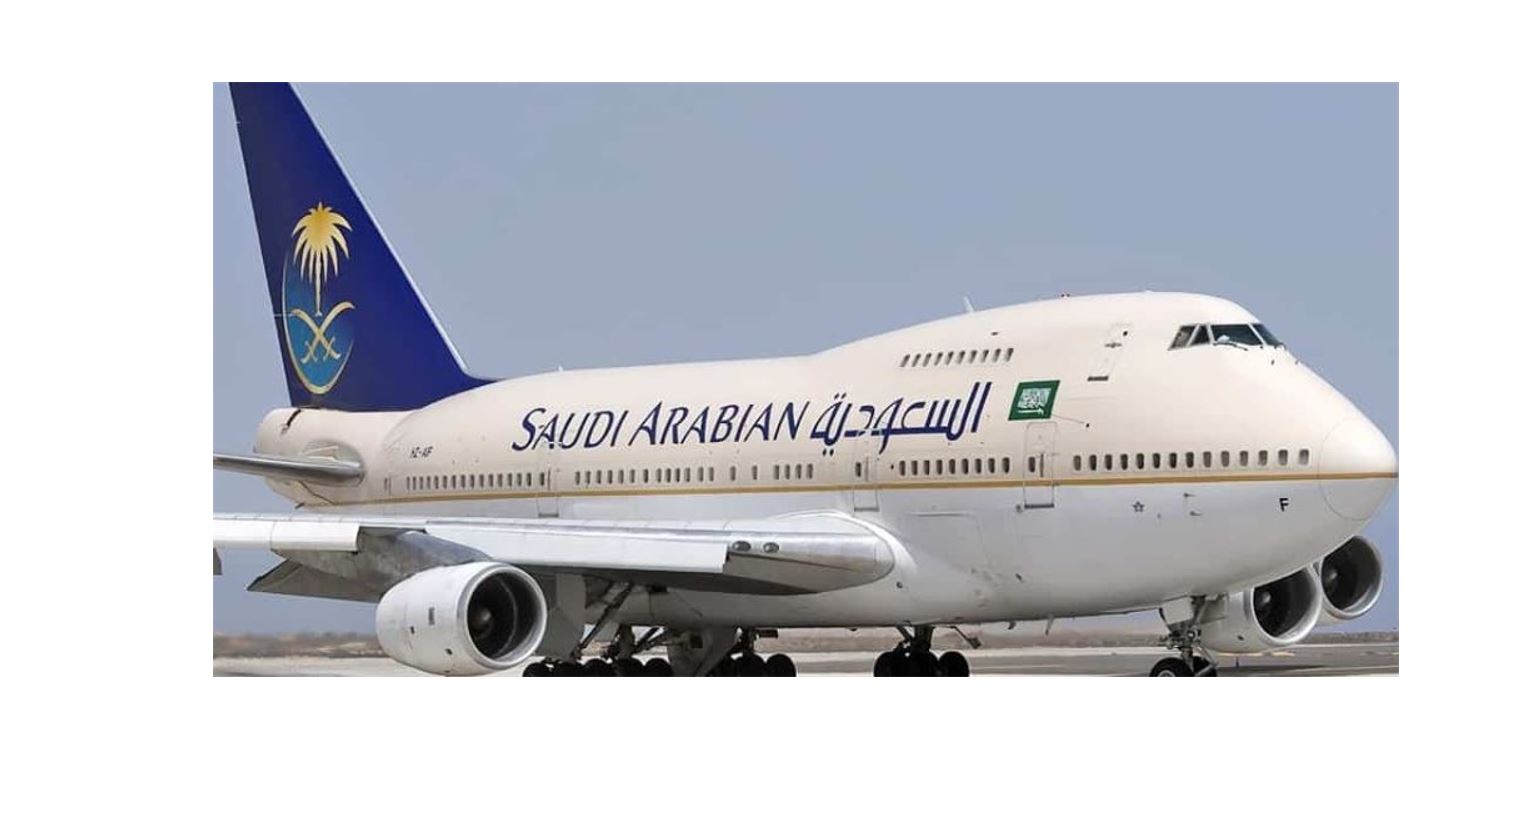 السعودية تعلن رفع تعليق السفر للمقيمين بشروط مع الدول المعلق القدوم منها وعودة رحلات الطيران